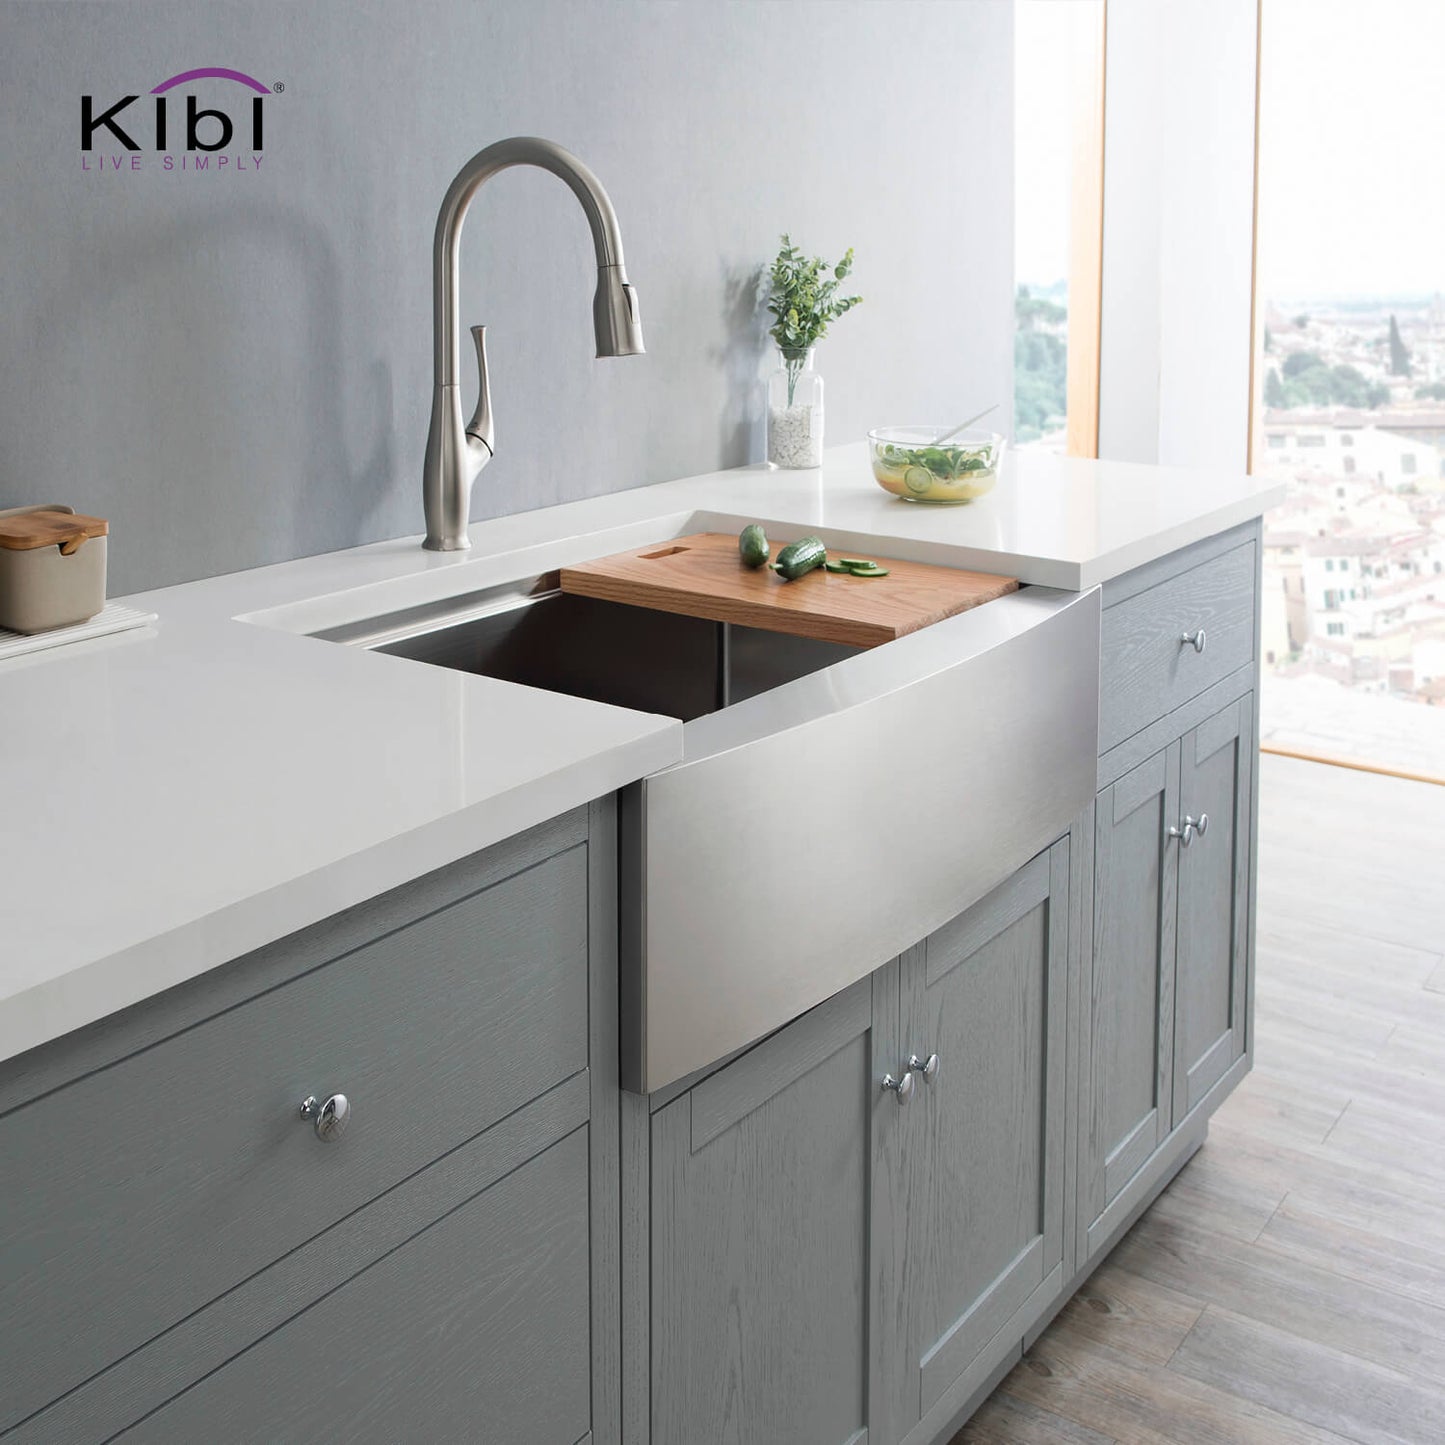 Kibi 30" x 22" x 10" Single Bowl Farmhouse Apron Kitchen Sink With Satin Finish